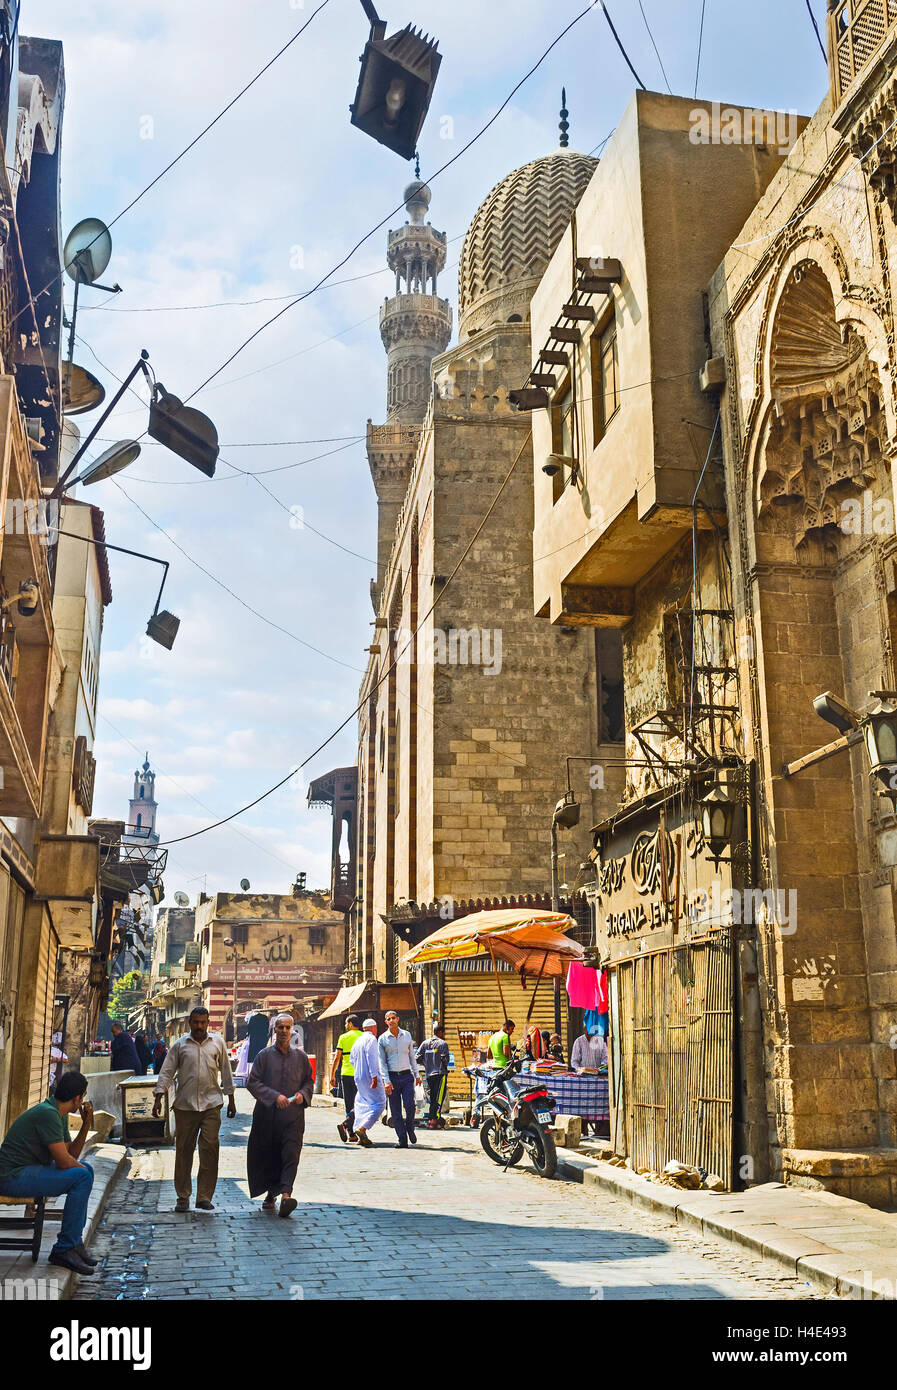 Der beste Weg, arabische Kultur in Ägypten zu entdecken ist, islamische Viertel mit seinen einzigartigen Souq und Moscheen, Kairo Ägypten zu besuchen Stockfoto